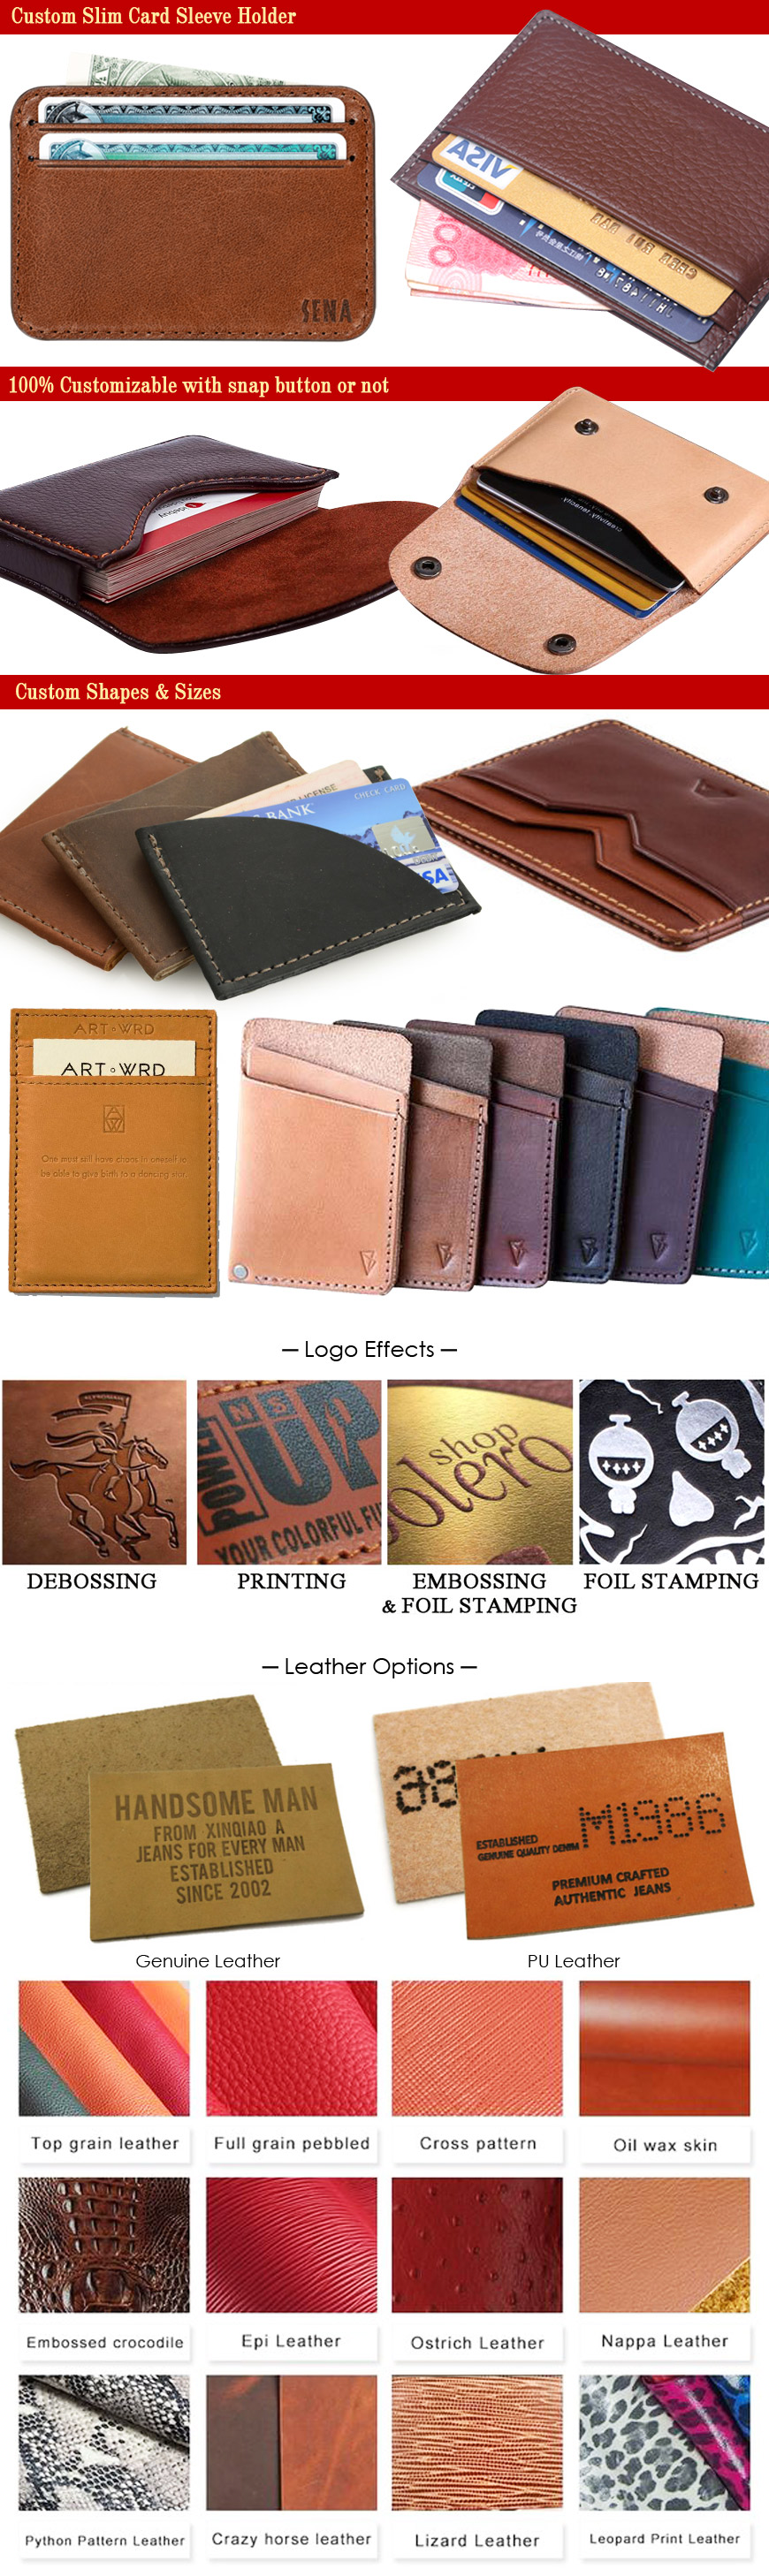 custom leather card sleeve holders